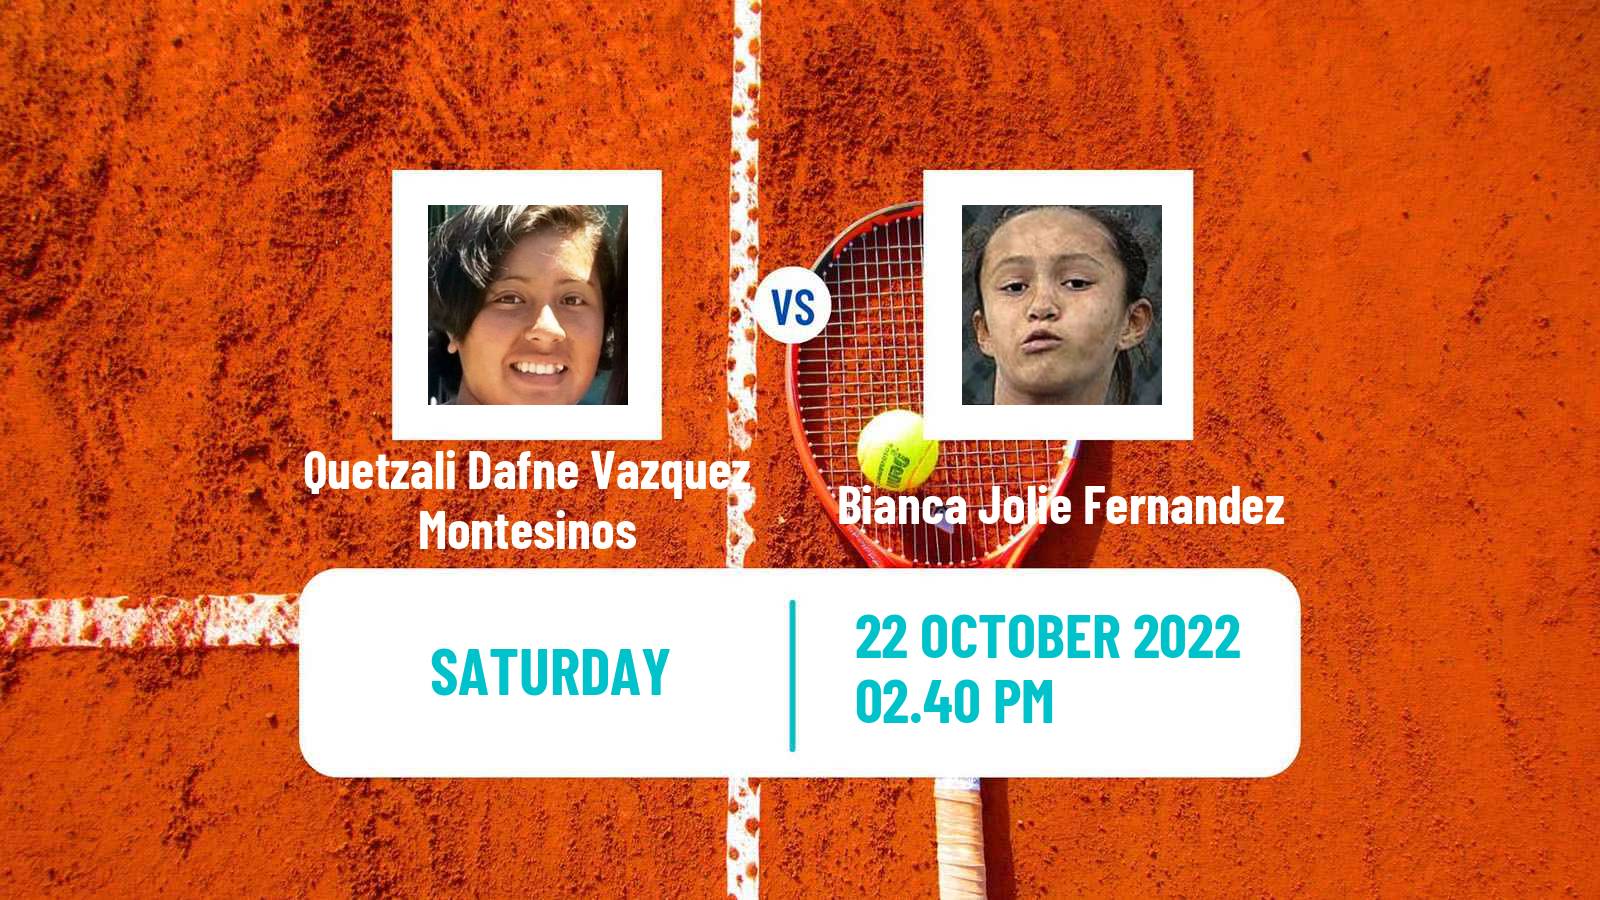 Tennis ATP Challenger Quetzali Dafne Vazquez Montesinos - Bianca Jolie Fernandez